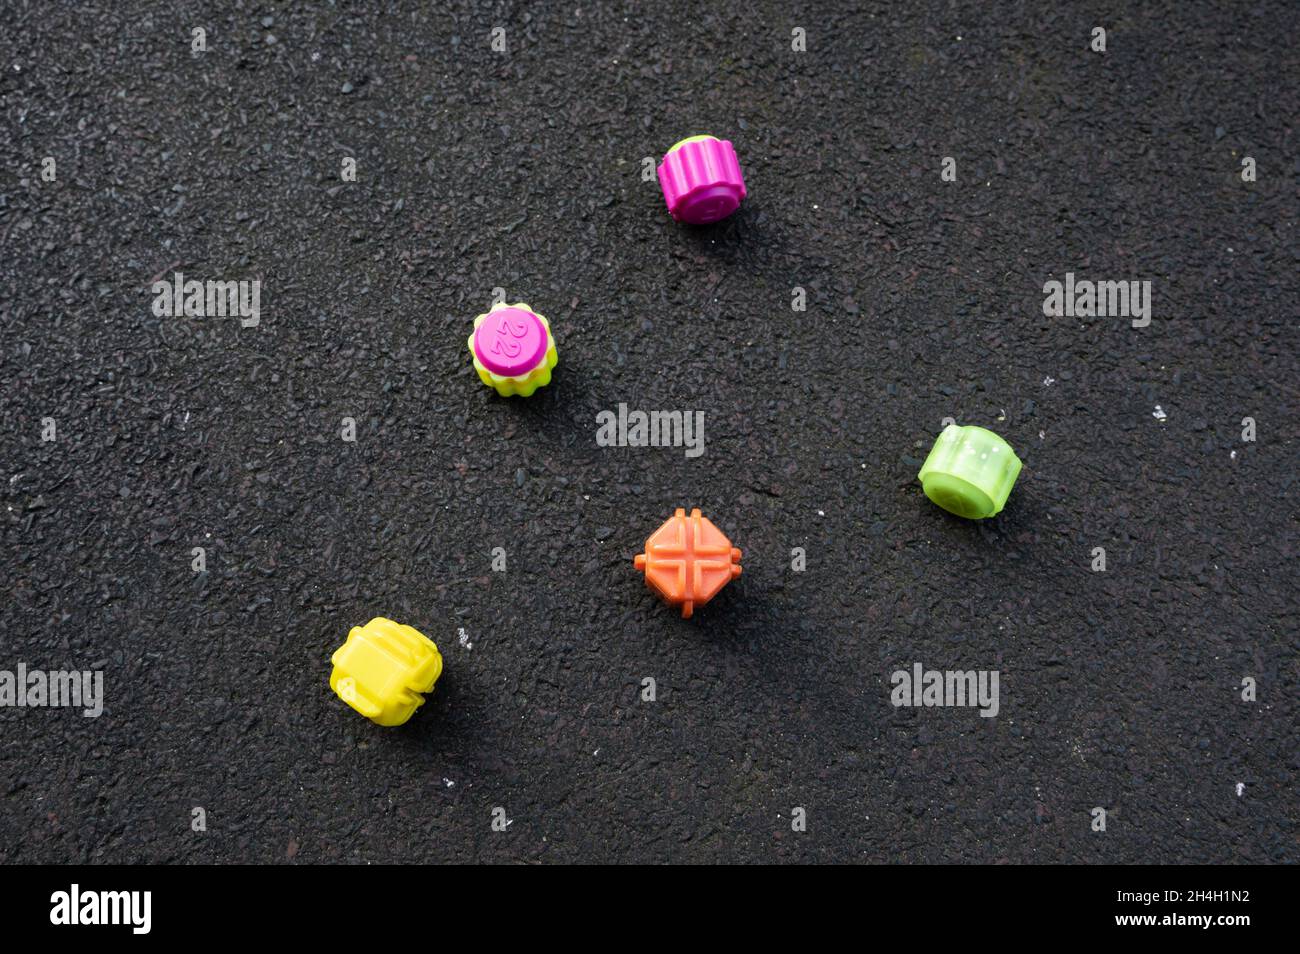 Das Gonggitdol in verschiedenen Farben auf dem Boden des Spielplatzes Stockfoto